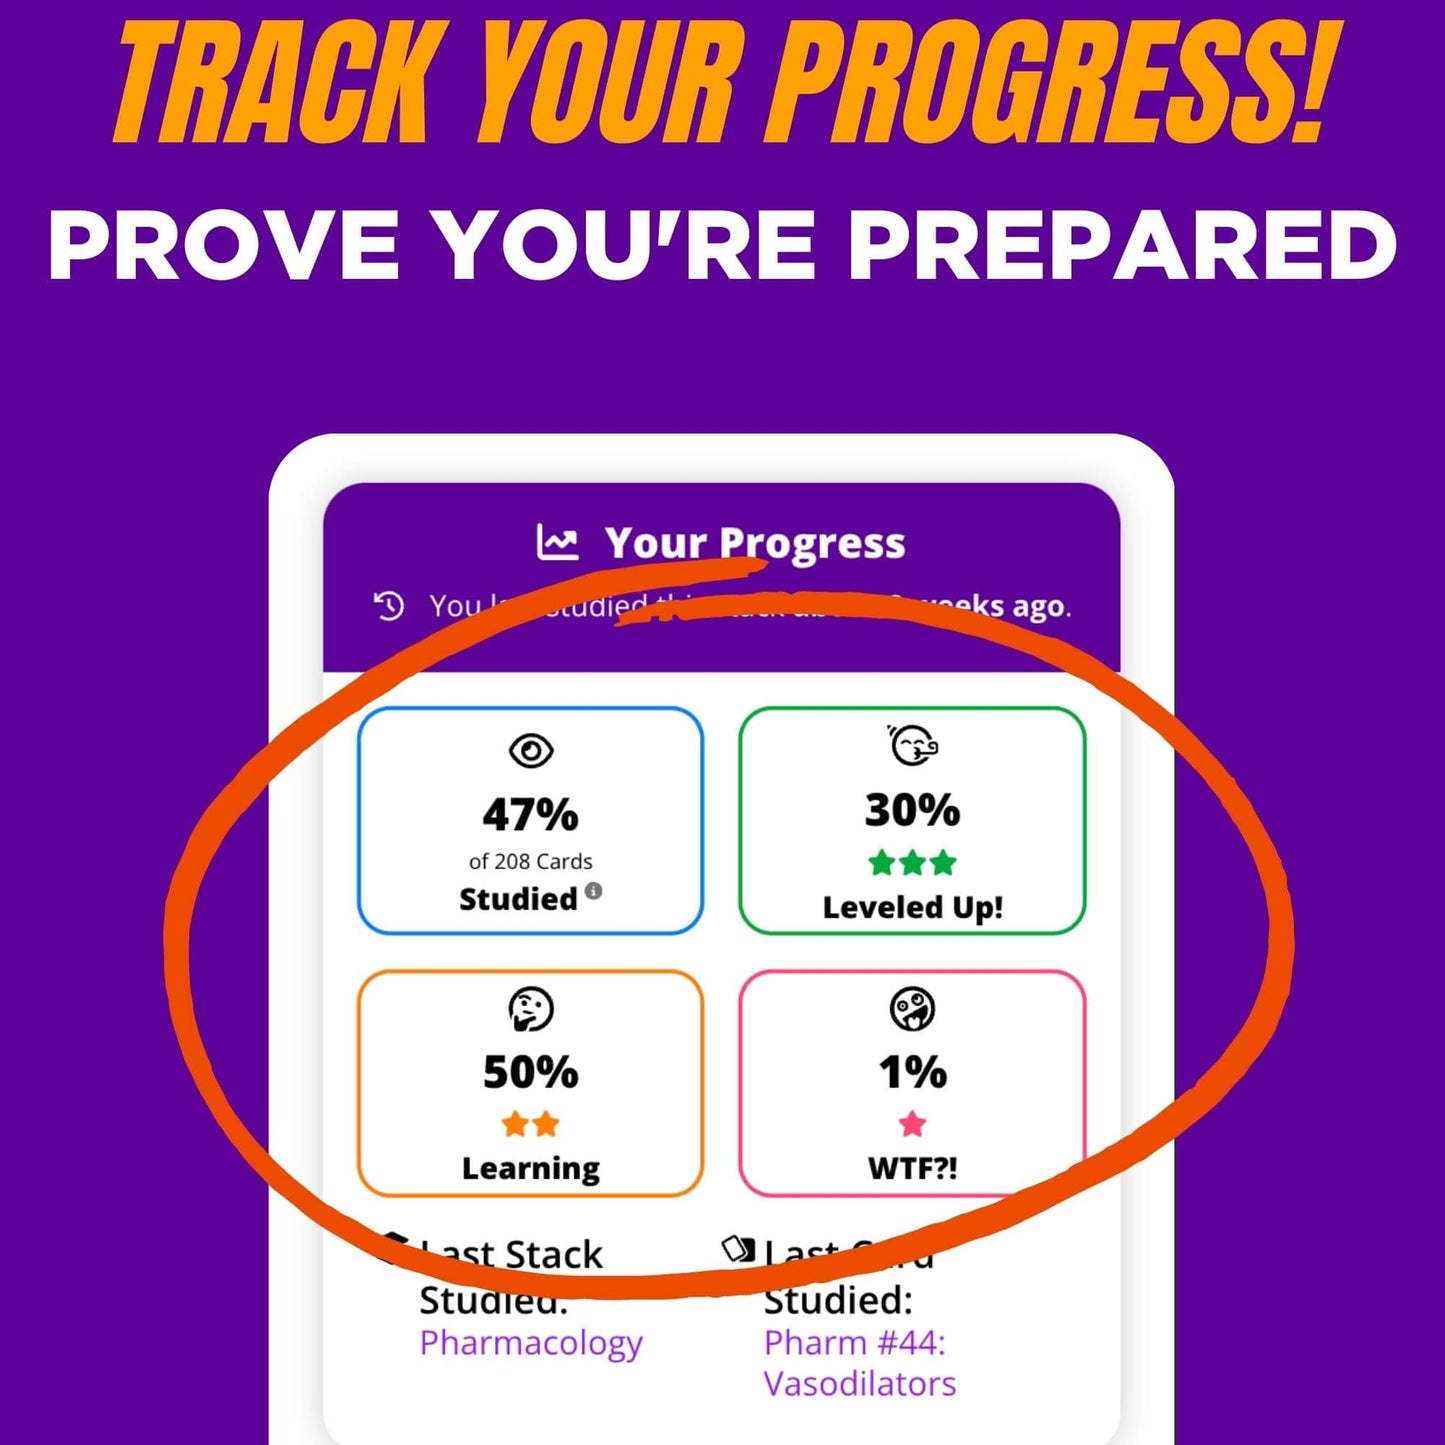 Track your progress! Prove you're prepared